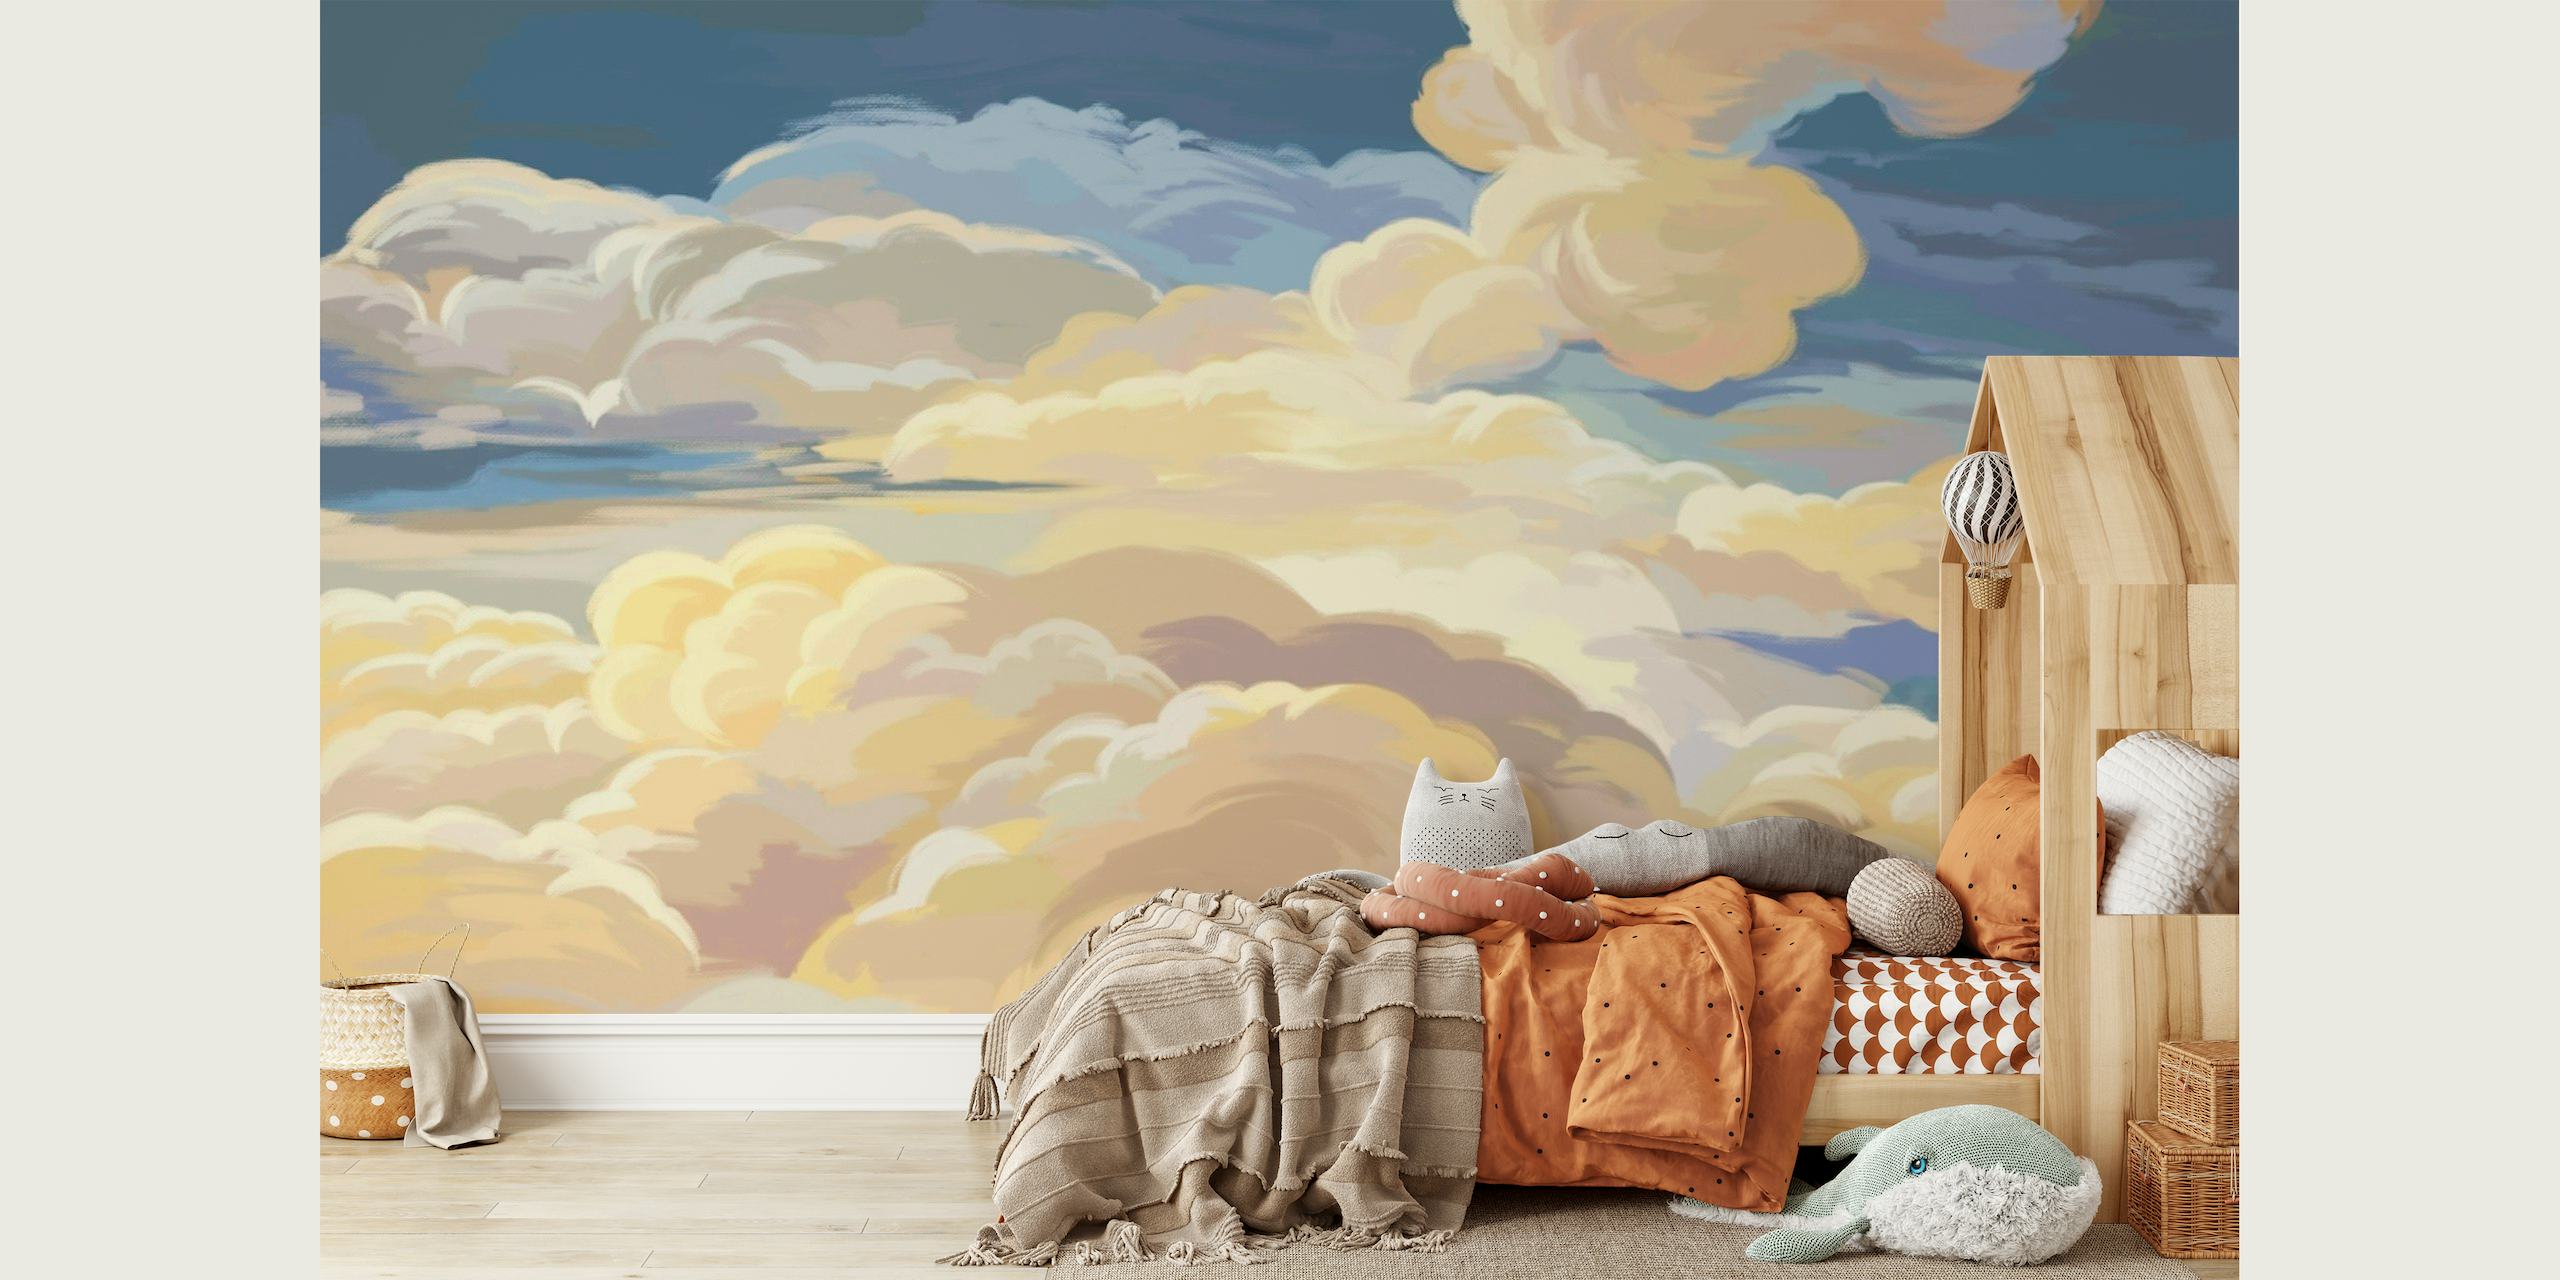 Sunset clouds art papel pintado